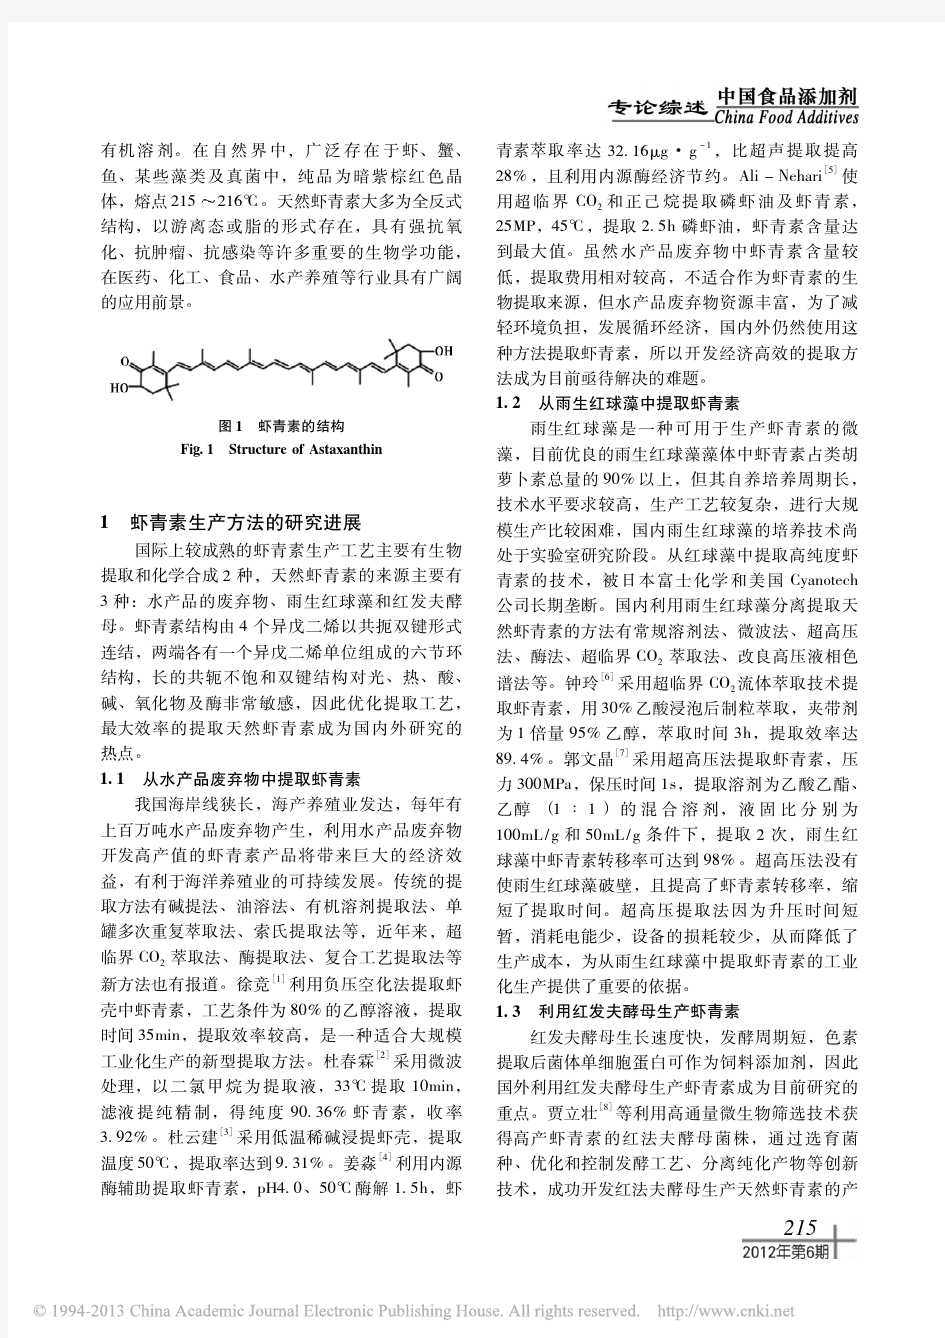 虾青素生产方法及生物活性的研究进展_黄文文